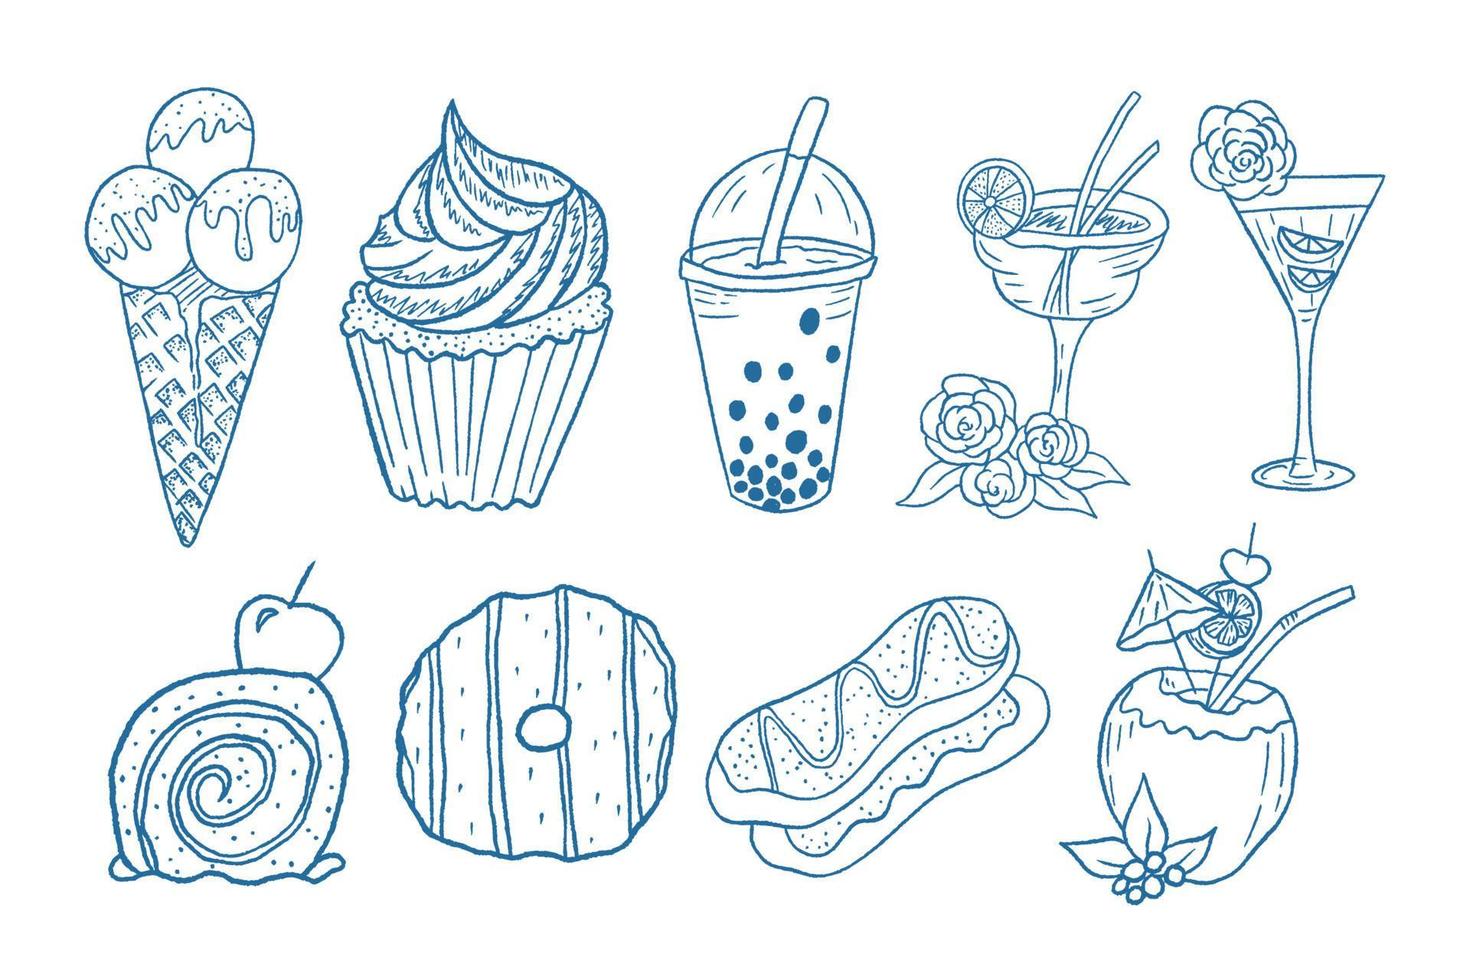 schets doodle snacks eten illustratie collectie, kleurboek vector